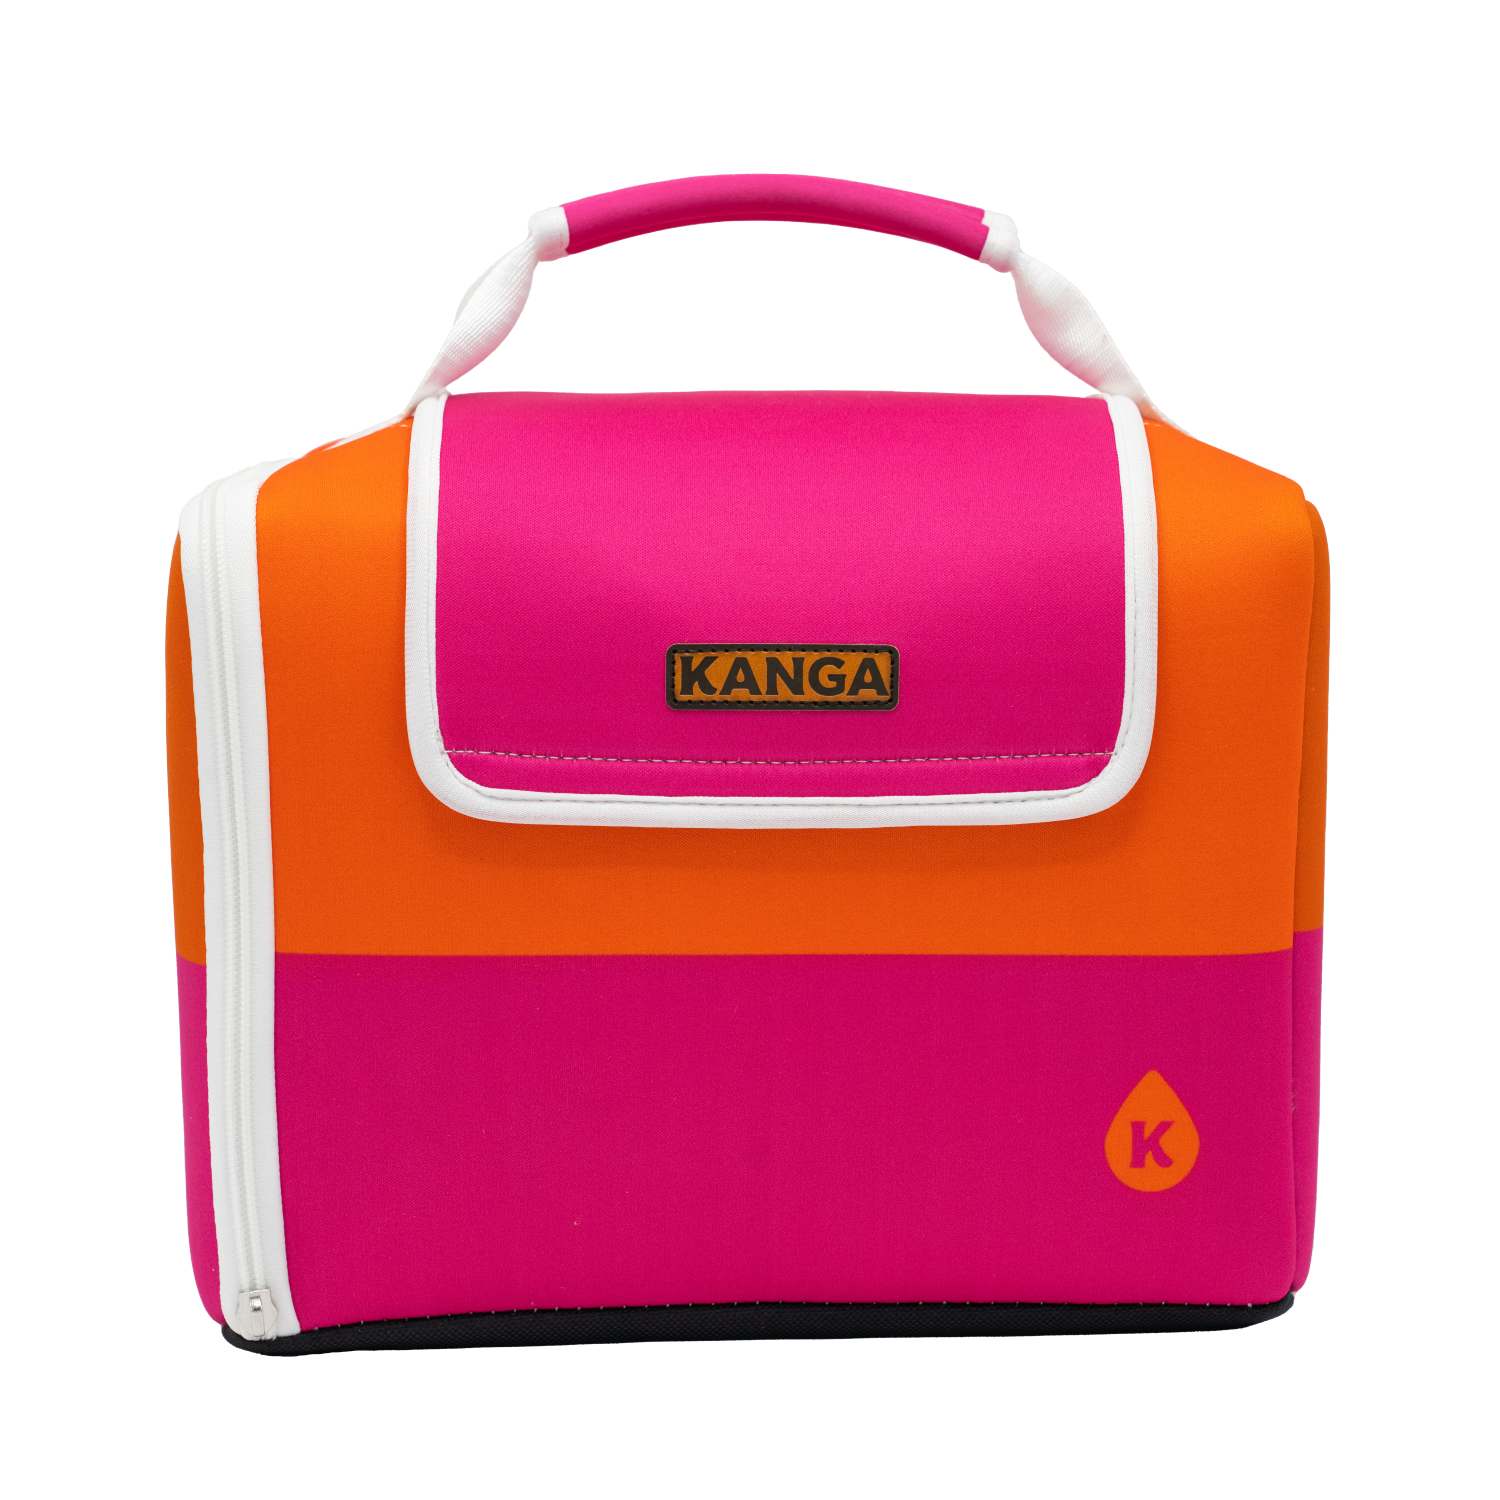 Kanga Sunset 12-Pack Kase Mate Cooler